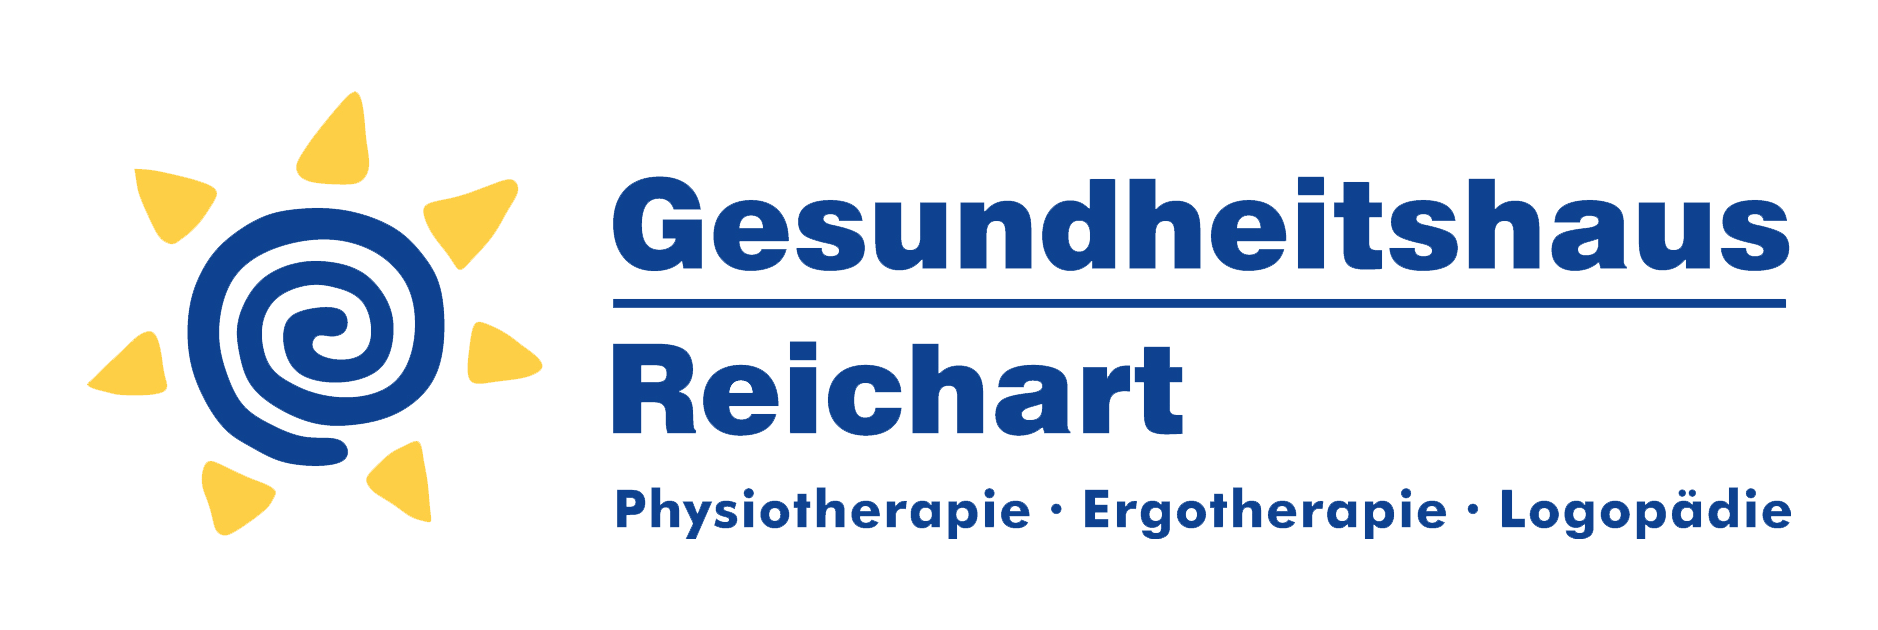 Gesundheitshaus Reichart GbR